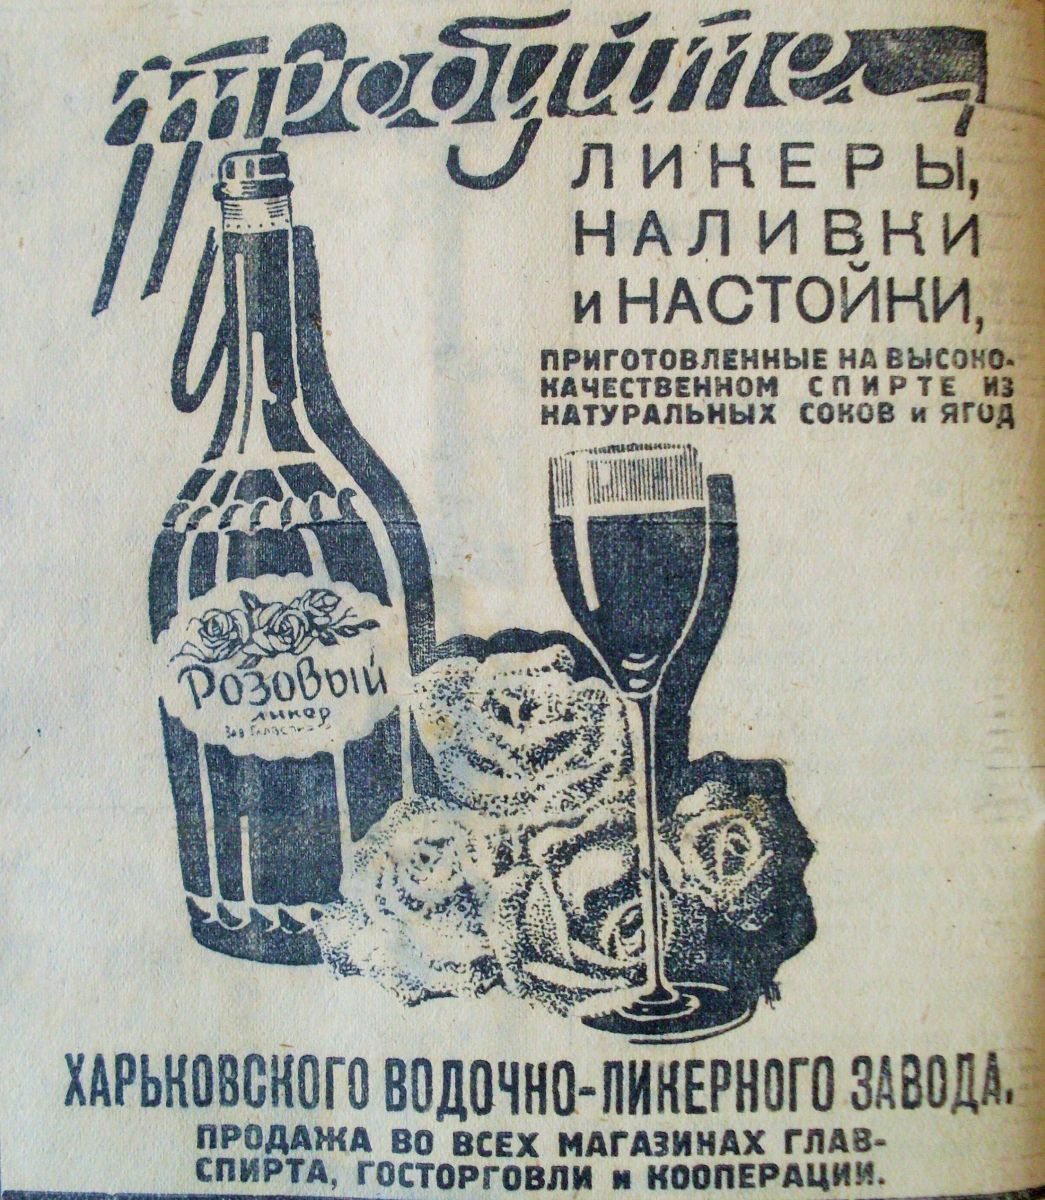 Ще трохи алкогольної реклами 1935 року